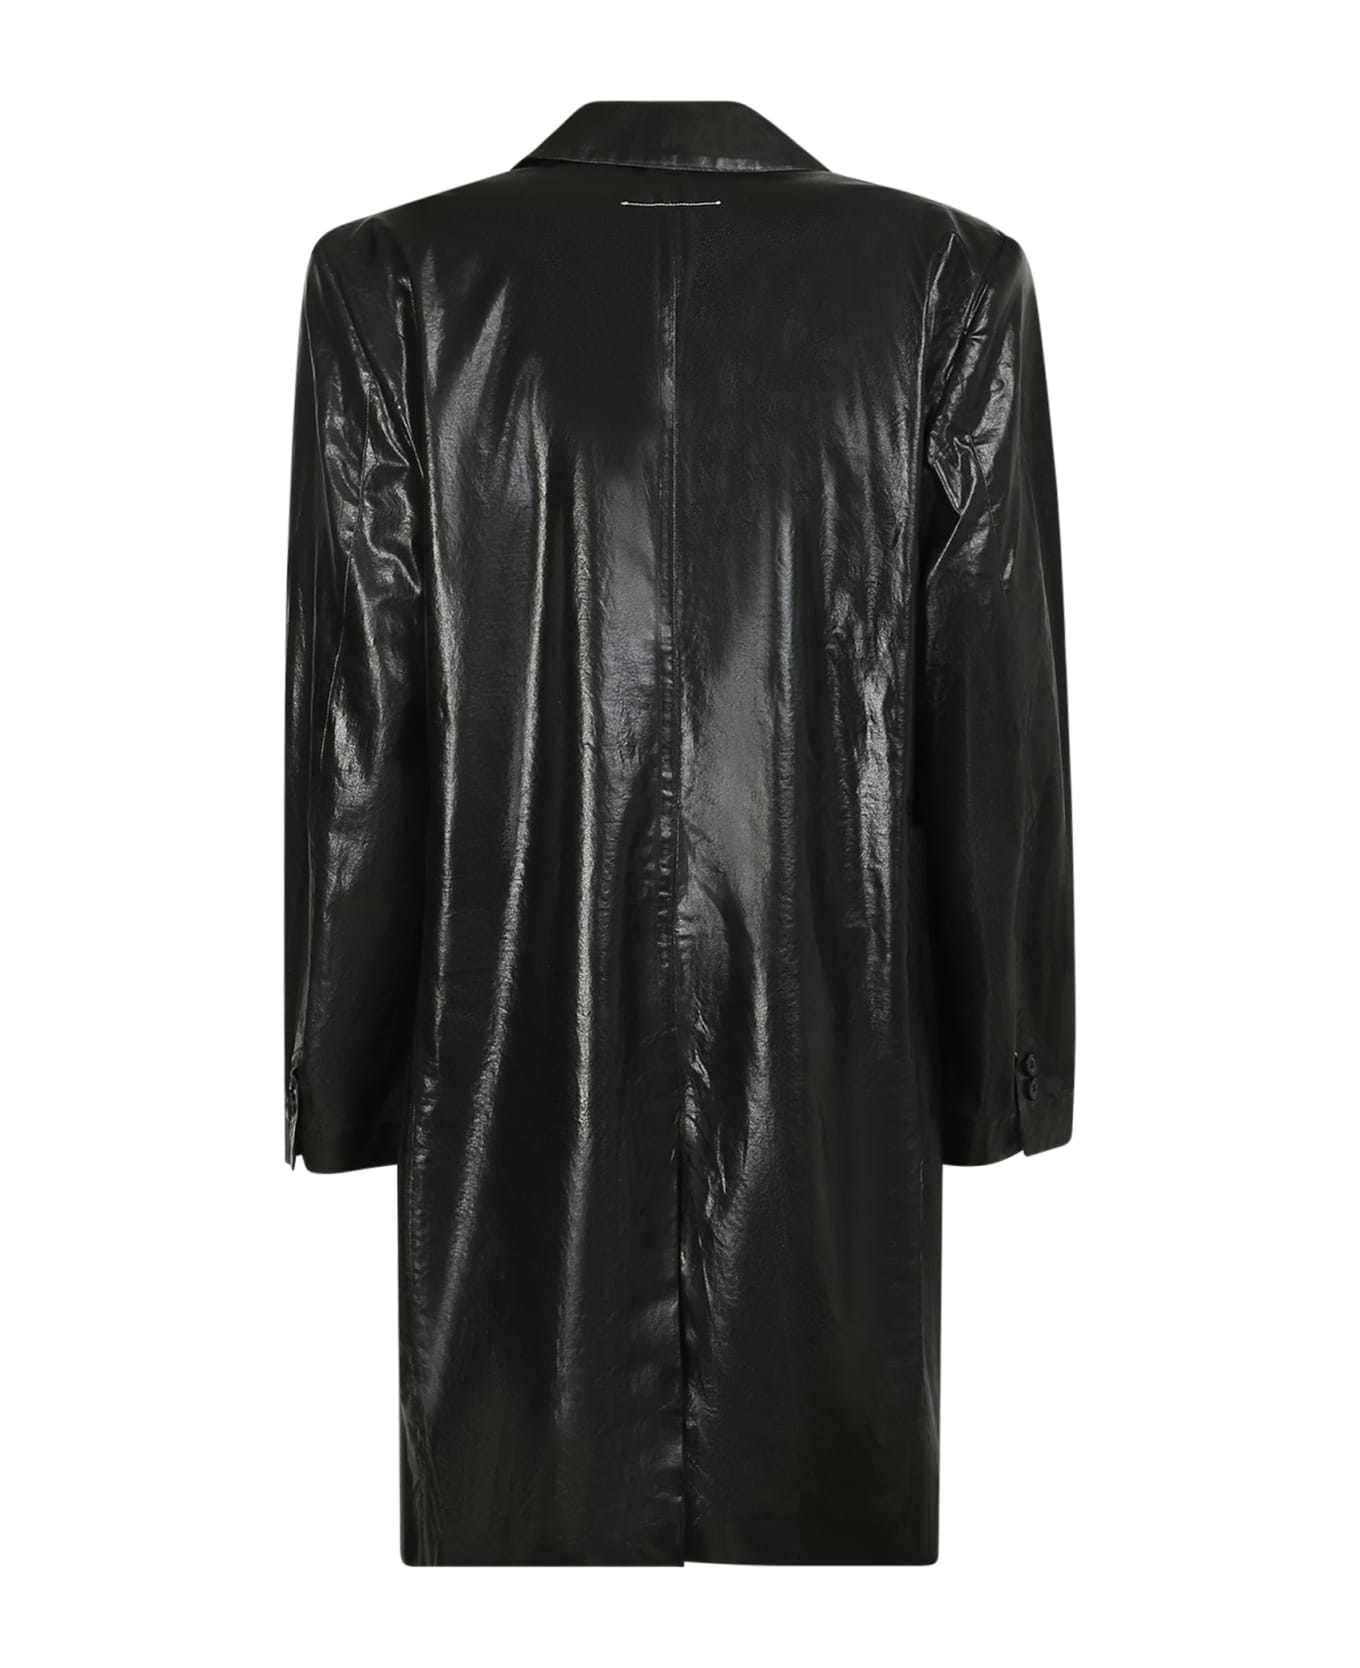 MM6 Maison Margiela Leather Jacket - Black